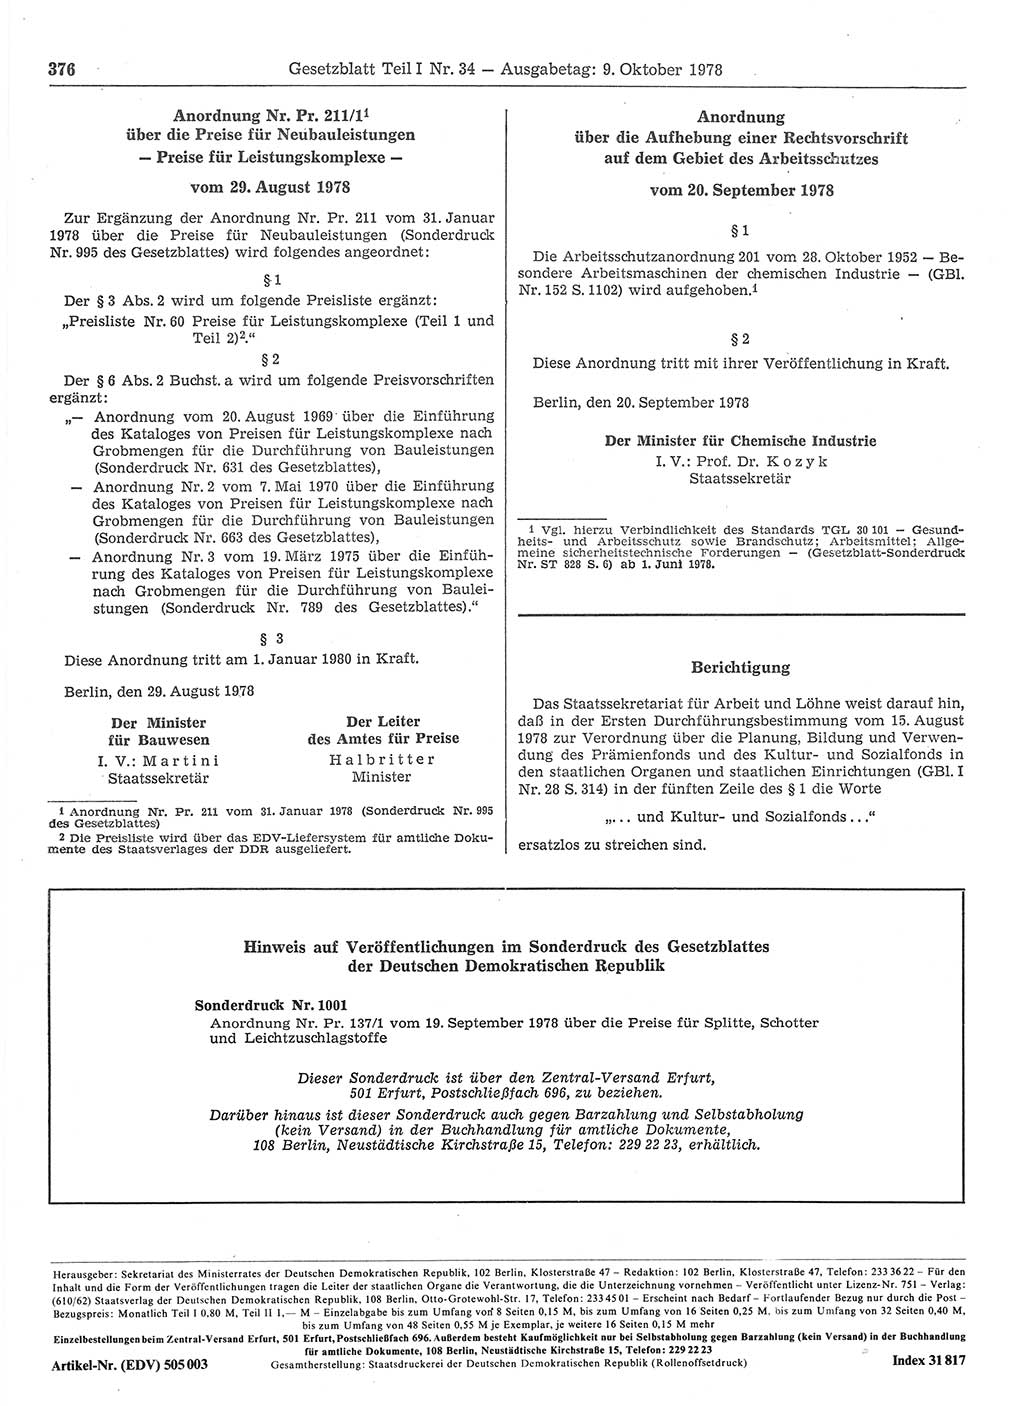 Gesetzblatt (GBl.) der Deutschen Demokratischen Republik (DDR) Teil Ⅰ 1978, Seite 376 (GBl. DDR Ⅰ 1978, S. 376)